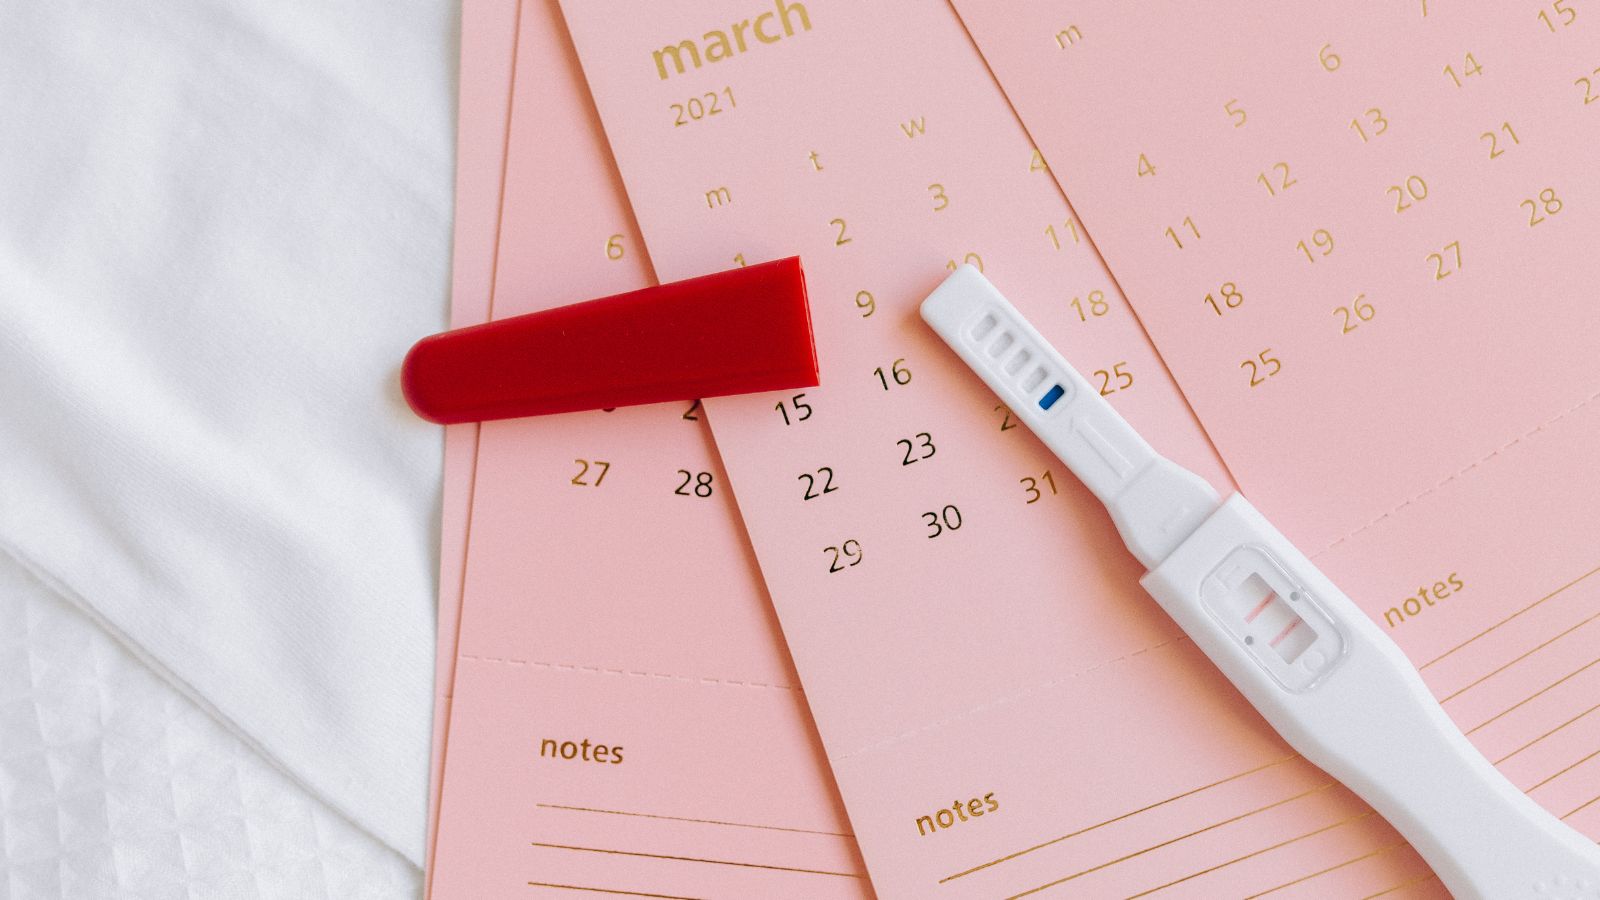 早期妊娠と着床出血: 知っておくべきこととは?